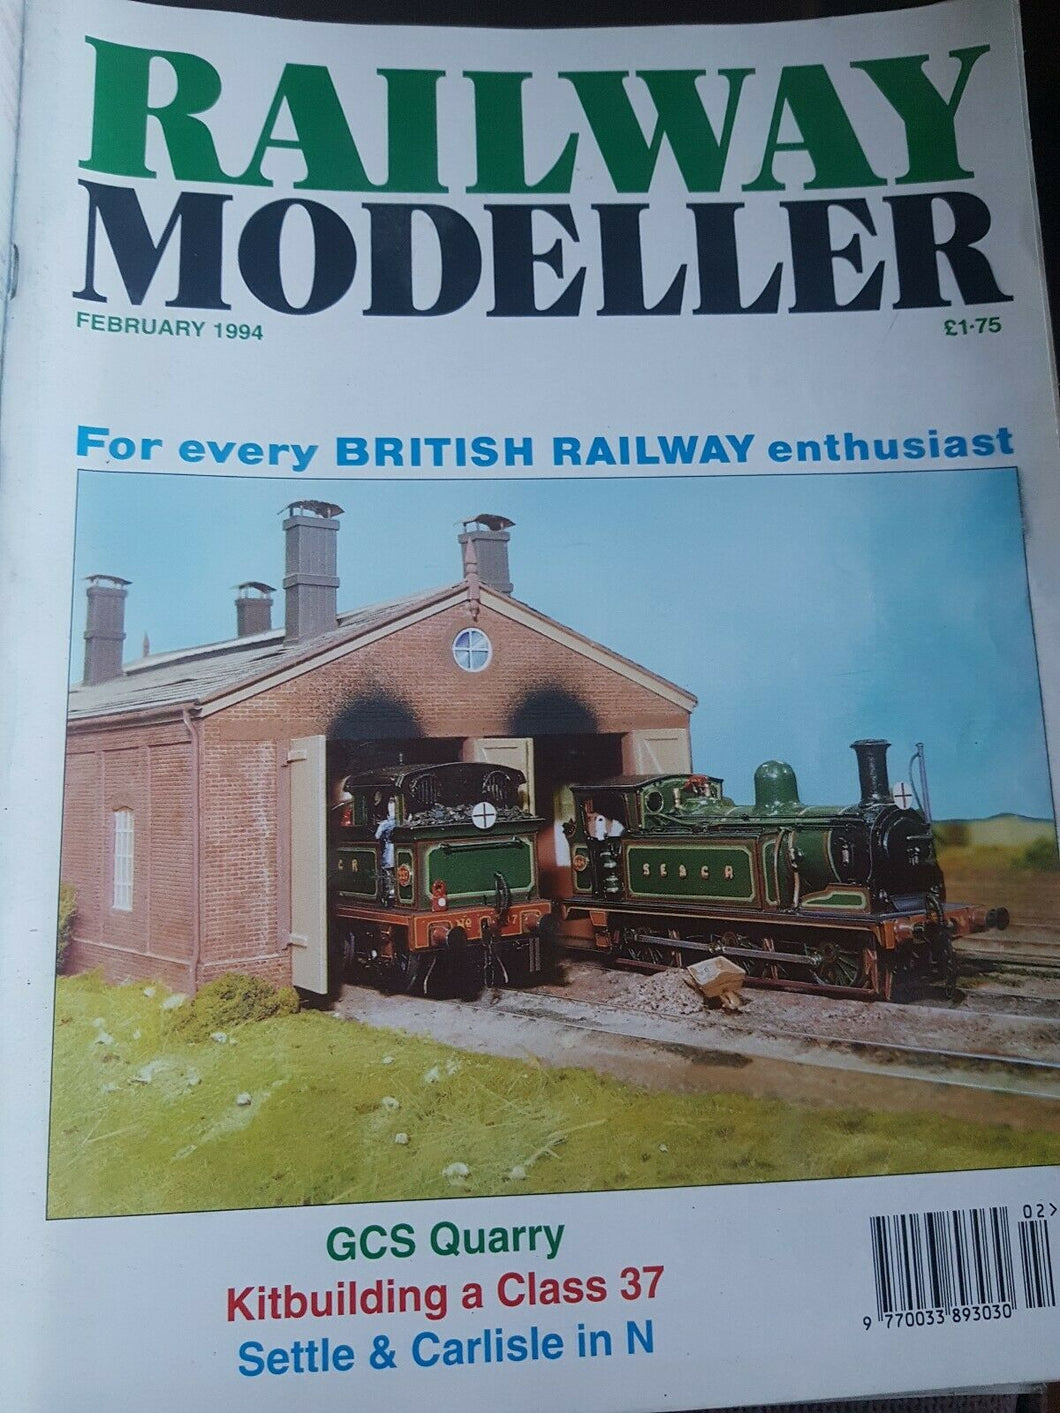 Railway modeller magazine February 1994